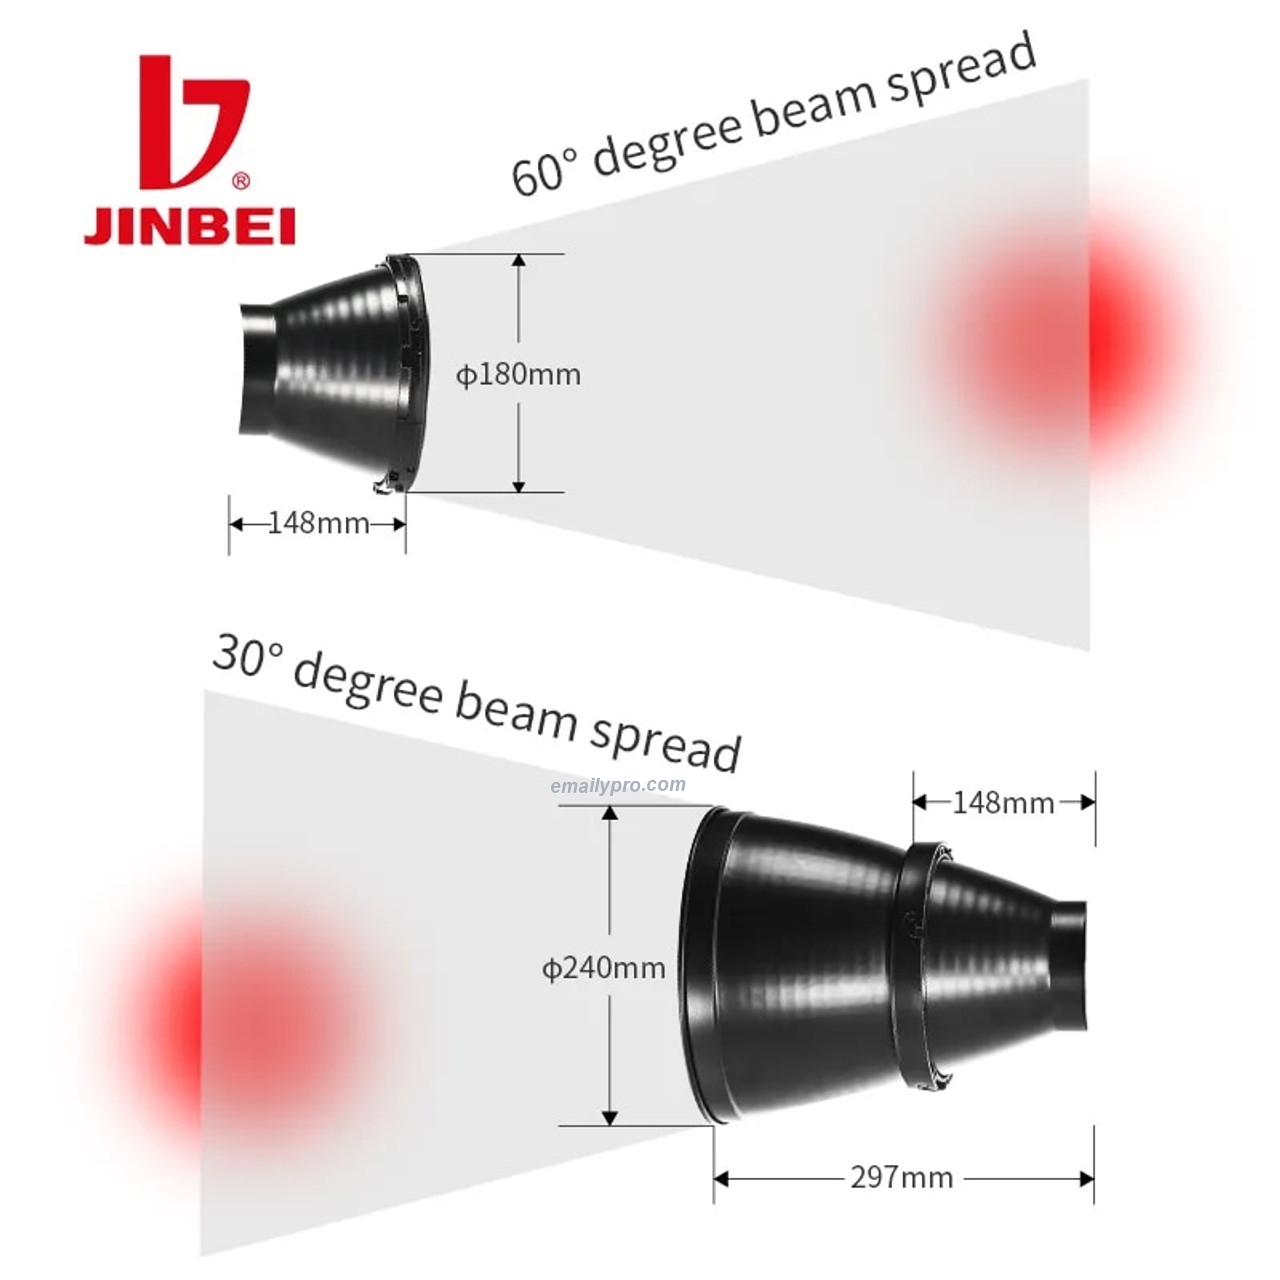 Choá phản quang Zoom Jinbei EF-30°~60°